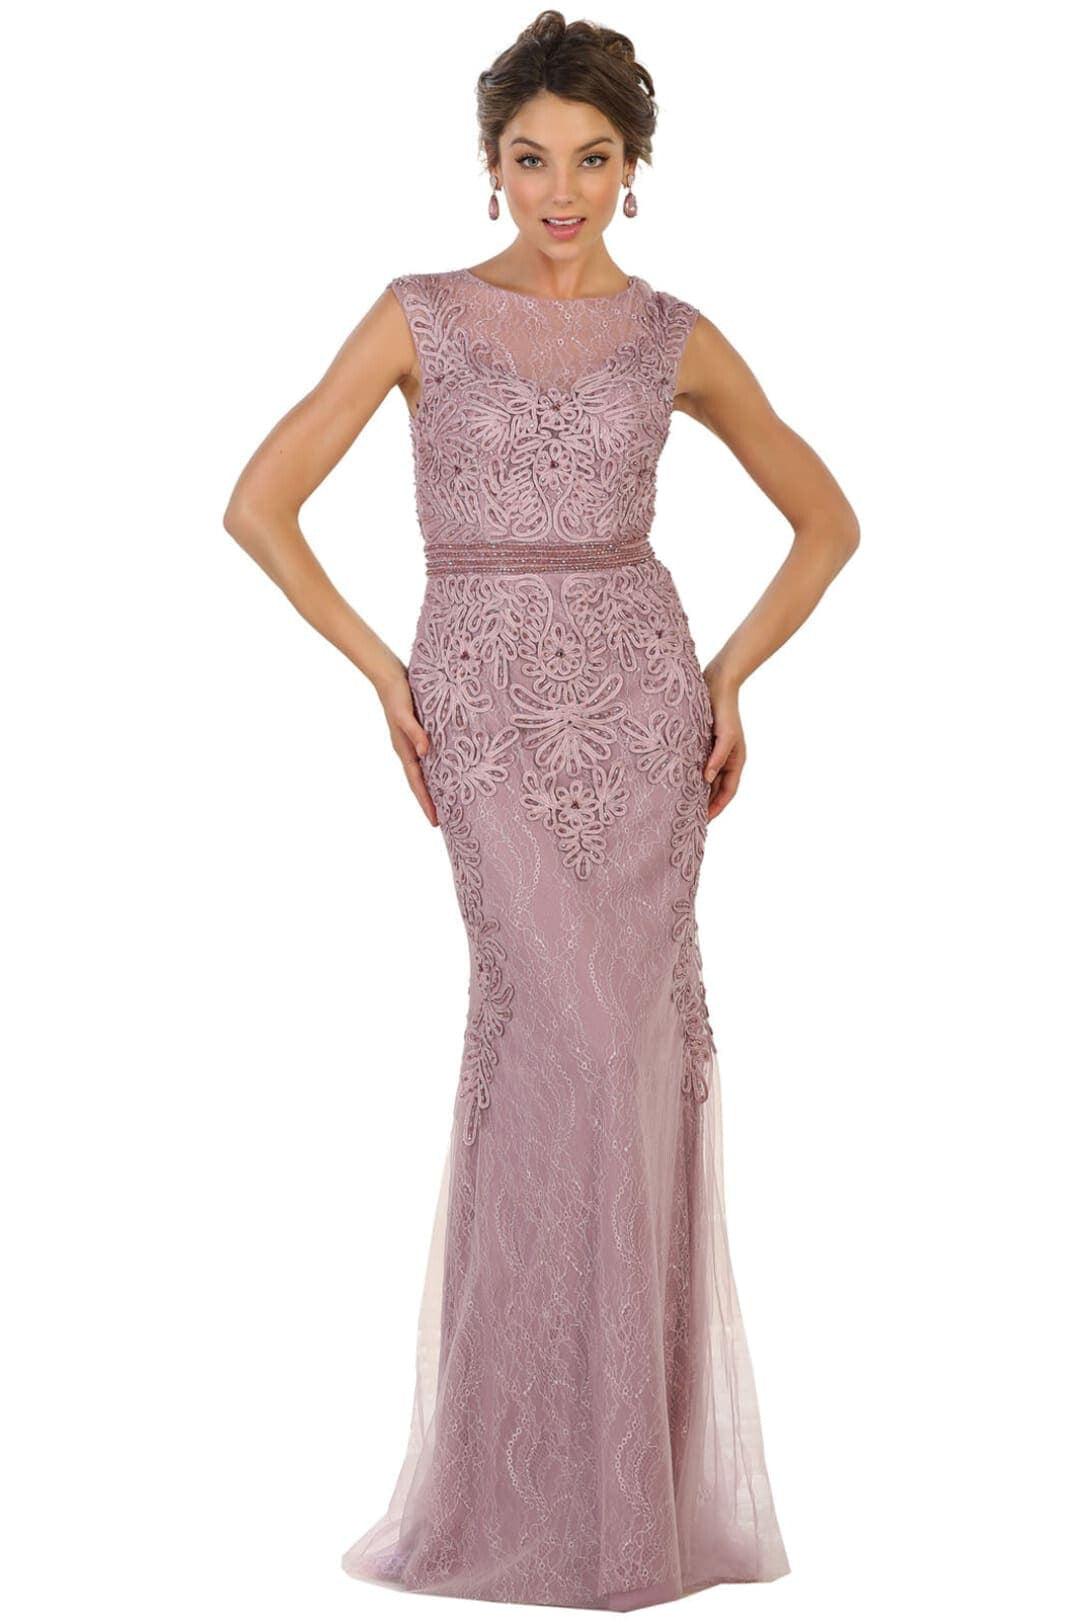 Embroidered Prom Dress - MAUVE / 6 - Dress